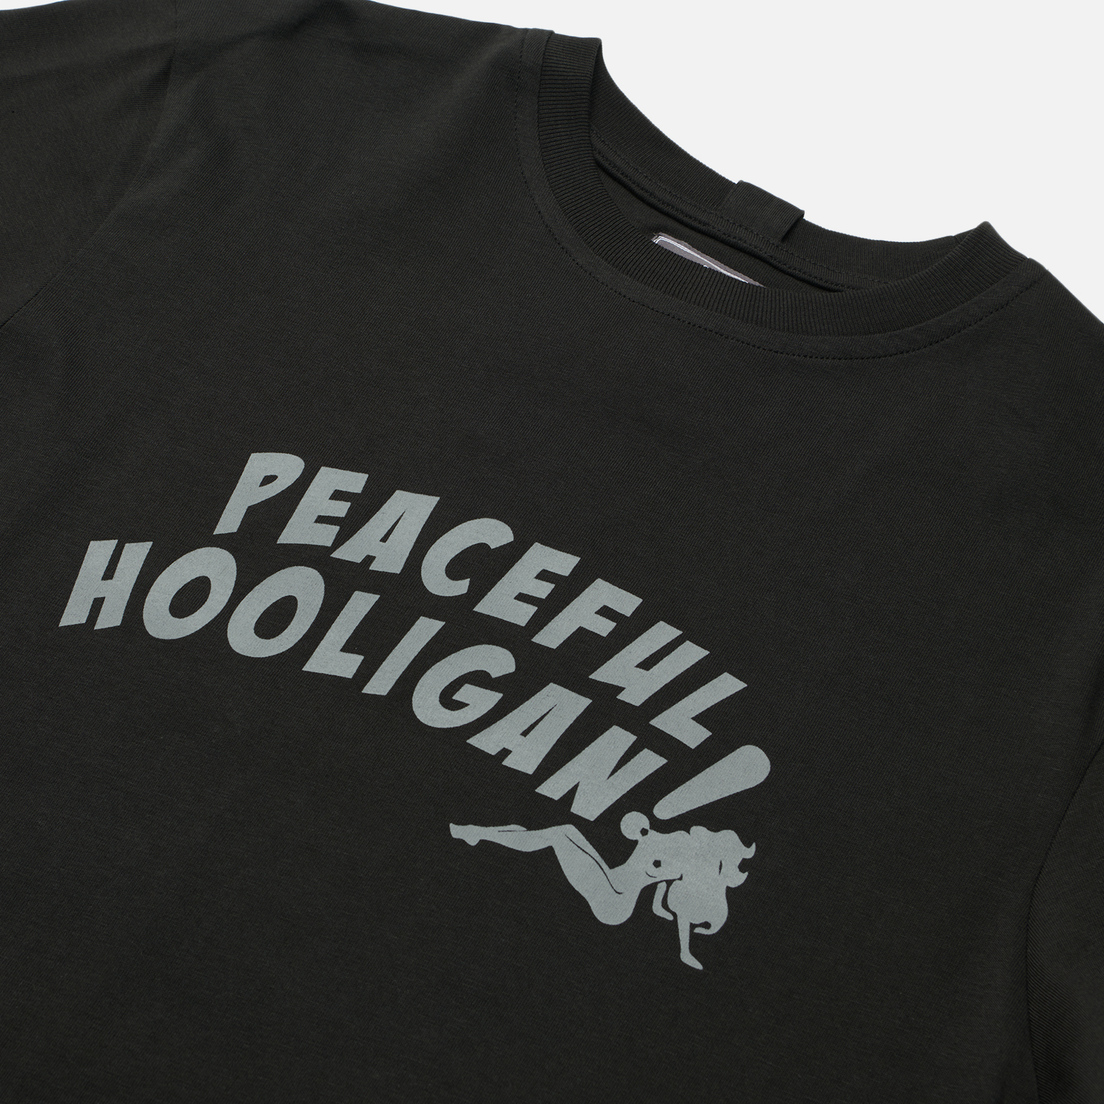 Peaceful Hooligan Мужская футболка Badabing